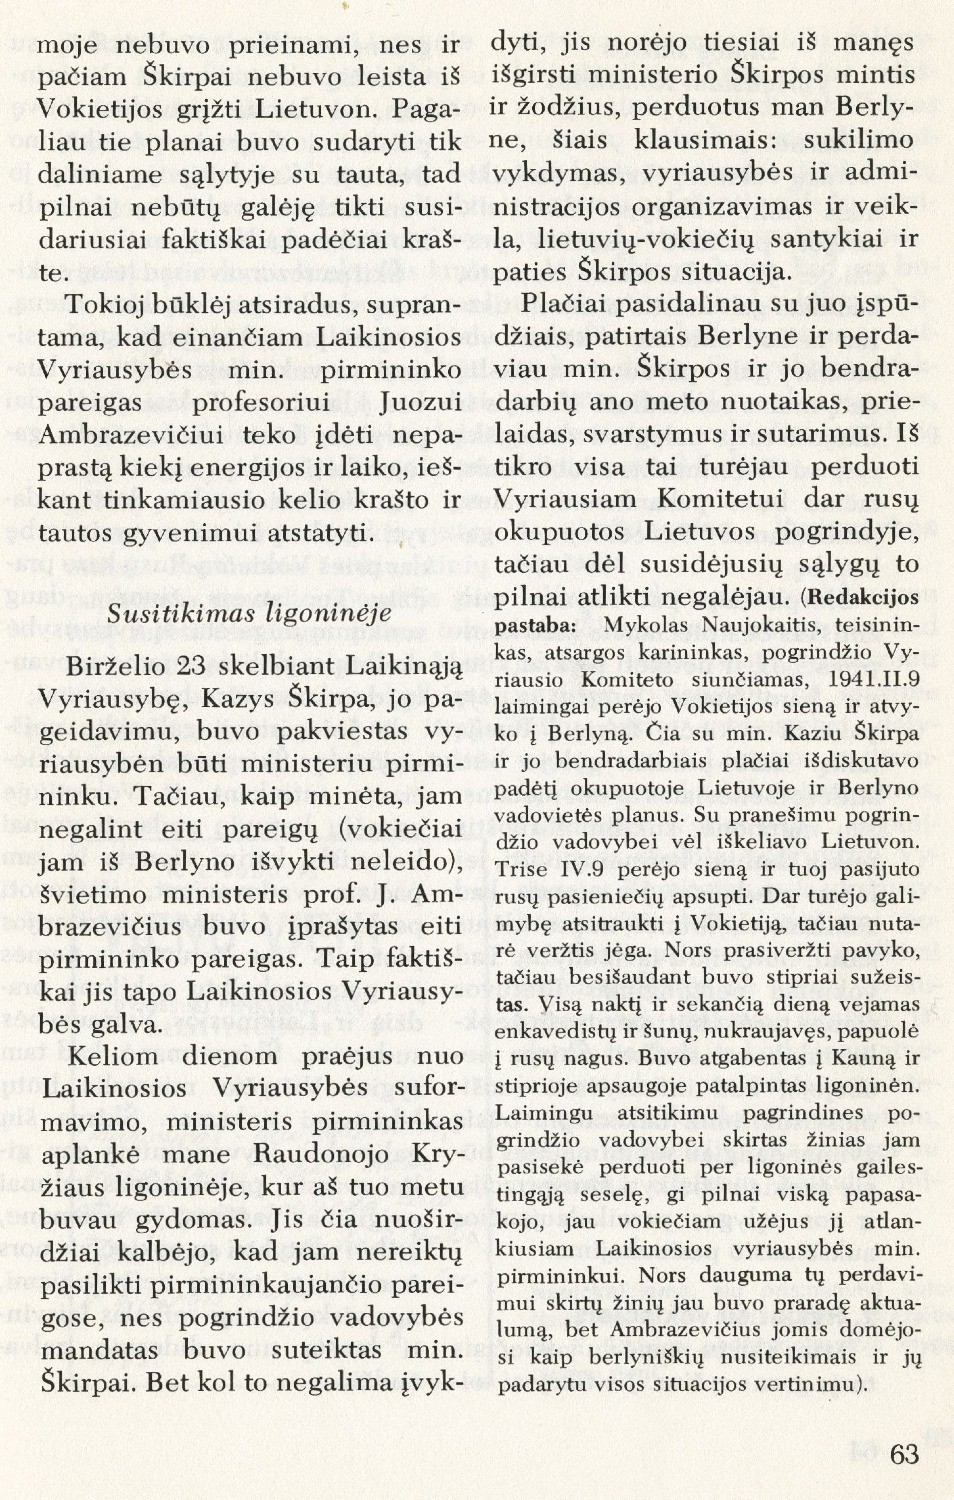 Susitikimas su prof. Juozu Ambrazevičiu: [1941 m. Laikinosios vyriausybės klausimais] / Mykolas Naujokaitis // Į laisvę. – 1975, Nr. 65, p. 62–69.